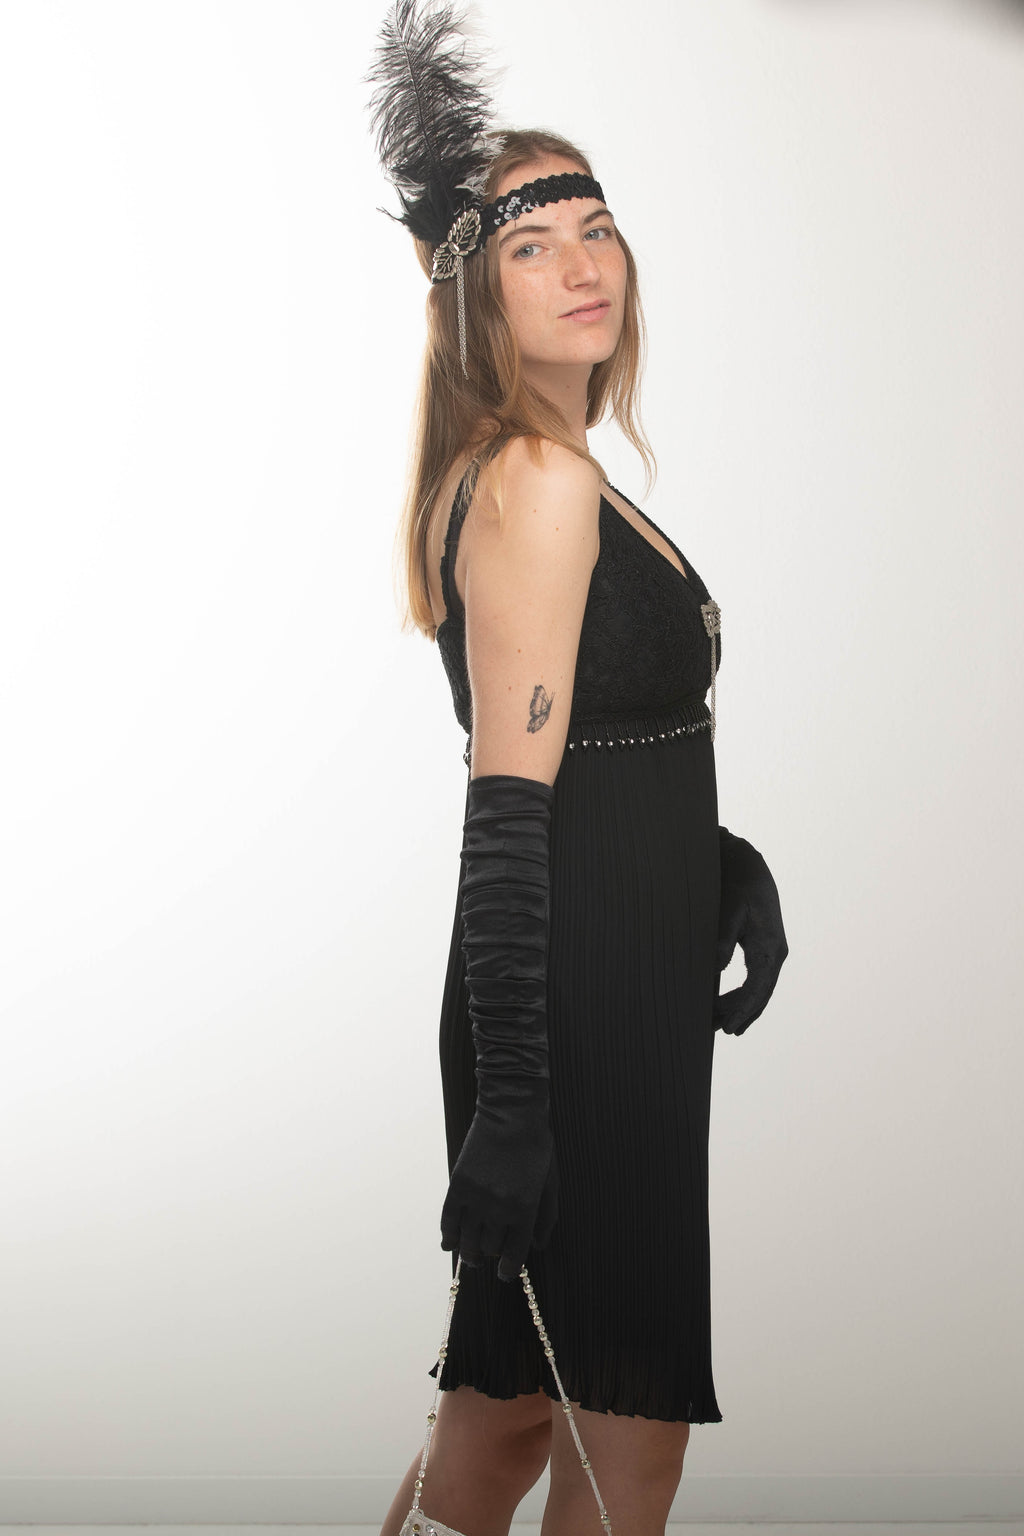 Hochwertiges Flapperkleid 20er Jahre Mode, Charlestonkleid Gr.34 schwarz